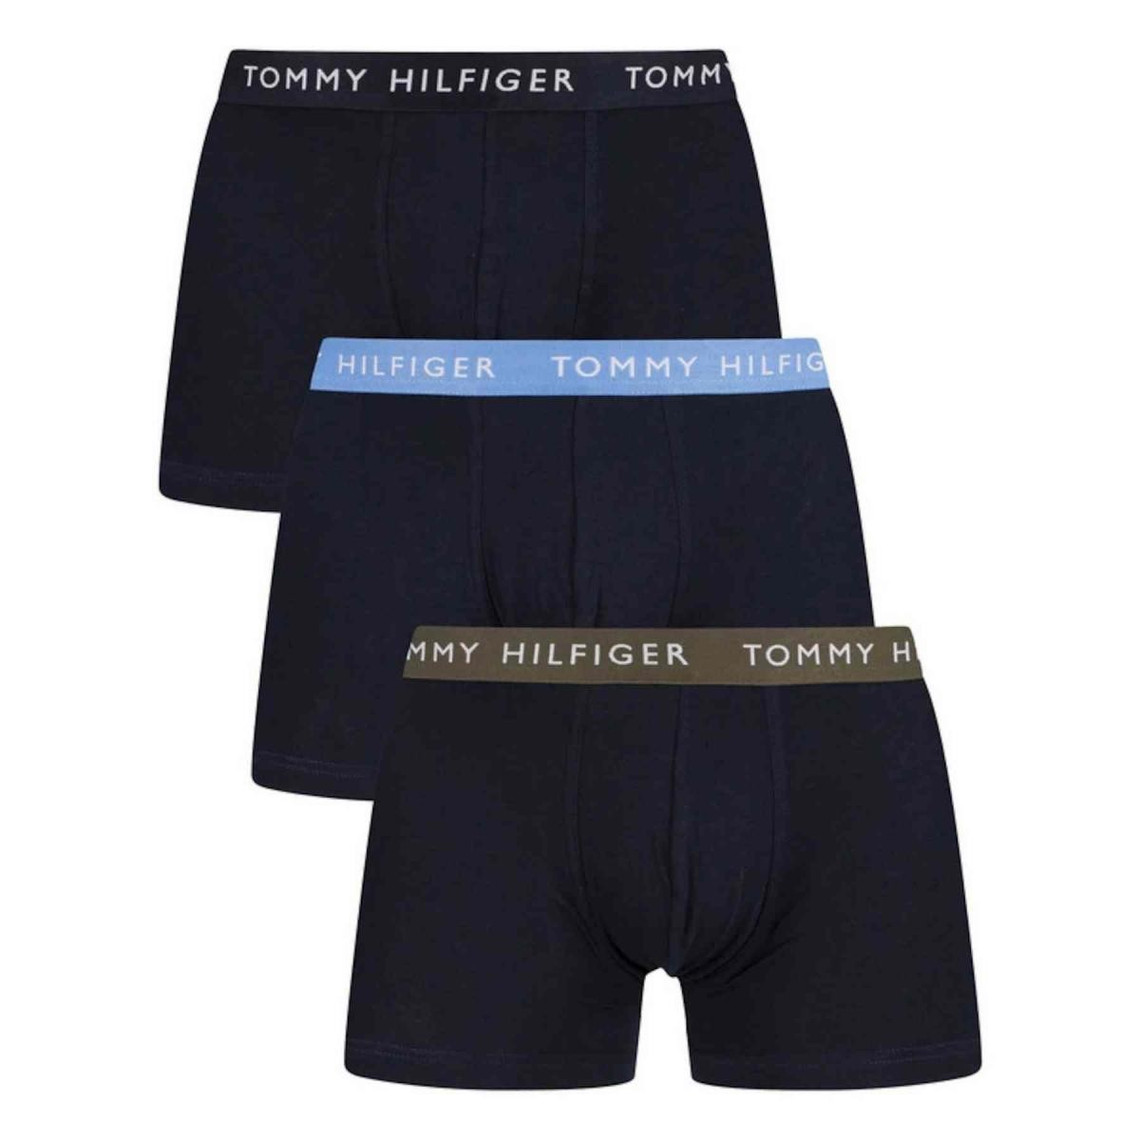 Homme Lot de 3 Visiter la boutique Tommy HilfigerTommy Hilfiger Boxer 